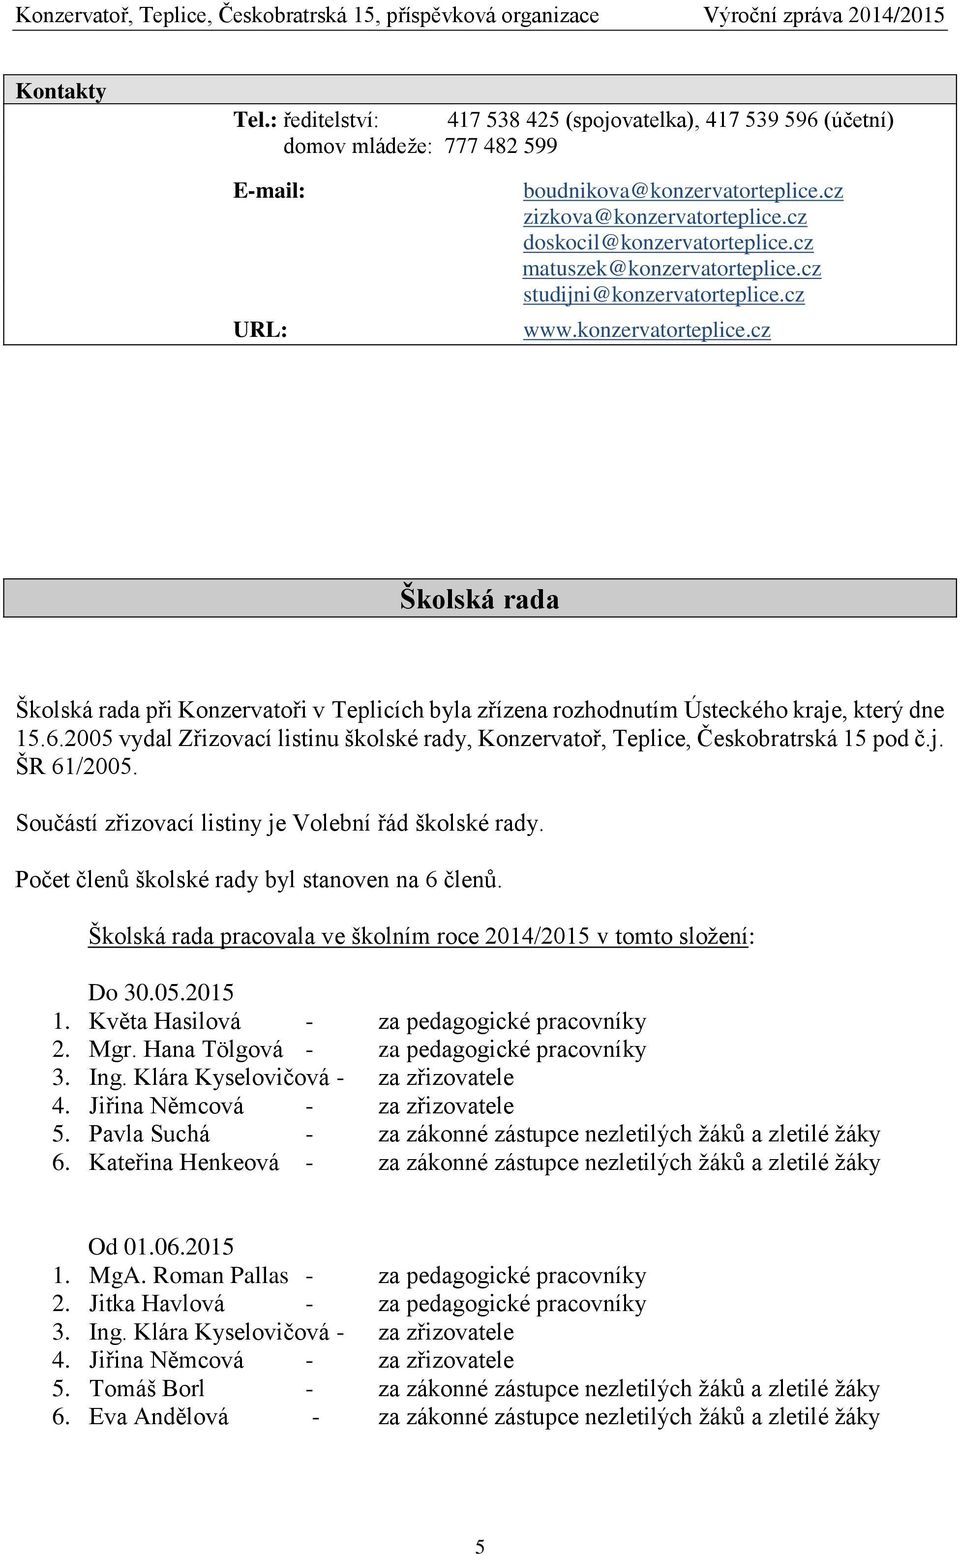 6.2005 vydal Zřizovací listinu školské rady, Konzervatoř, Teplice, Českobratrská 15 pod č.j. ŠR 61/2005. Součástí zřizovací listiny je Volební řád školské rady.